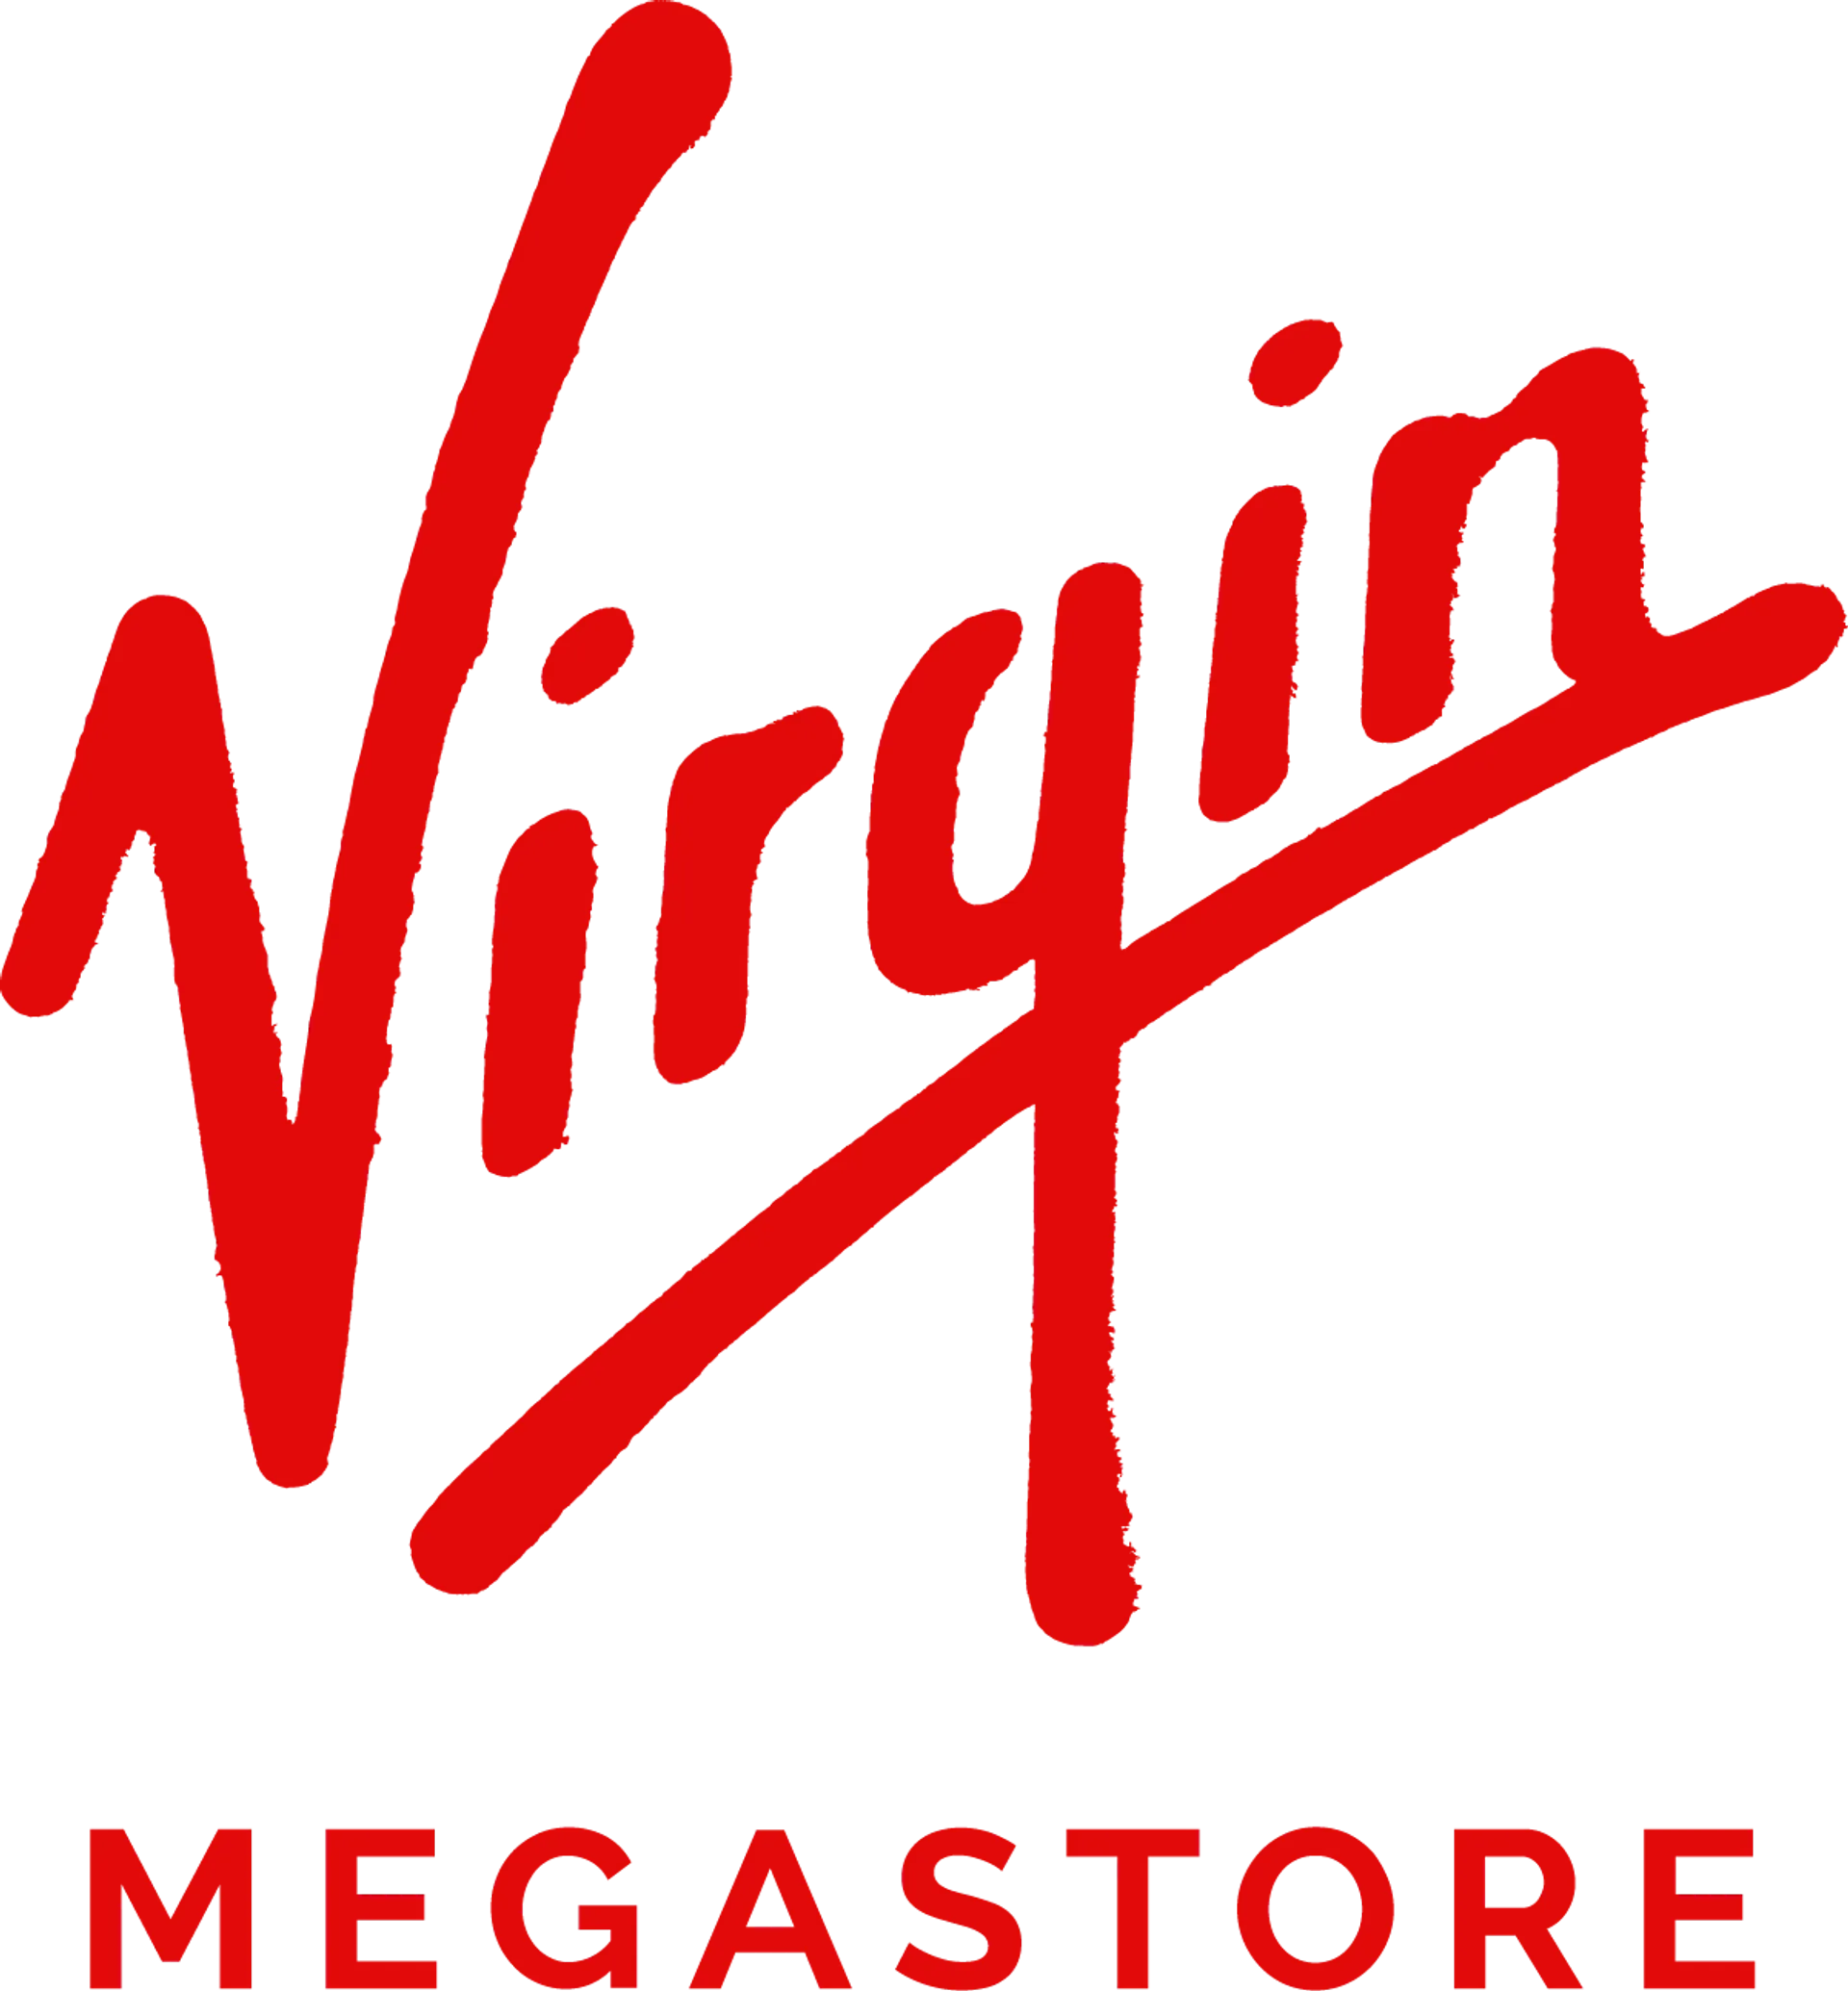 VIRGIN MEGASTORE logo. Current catalogue